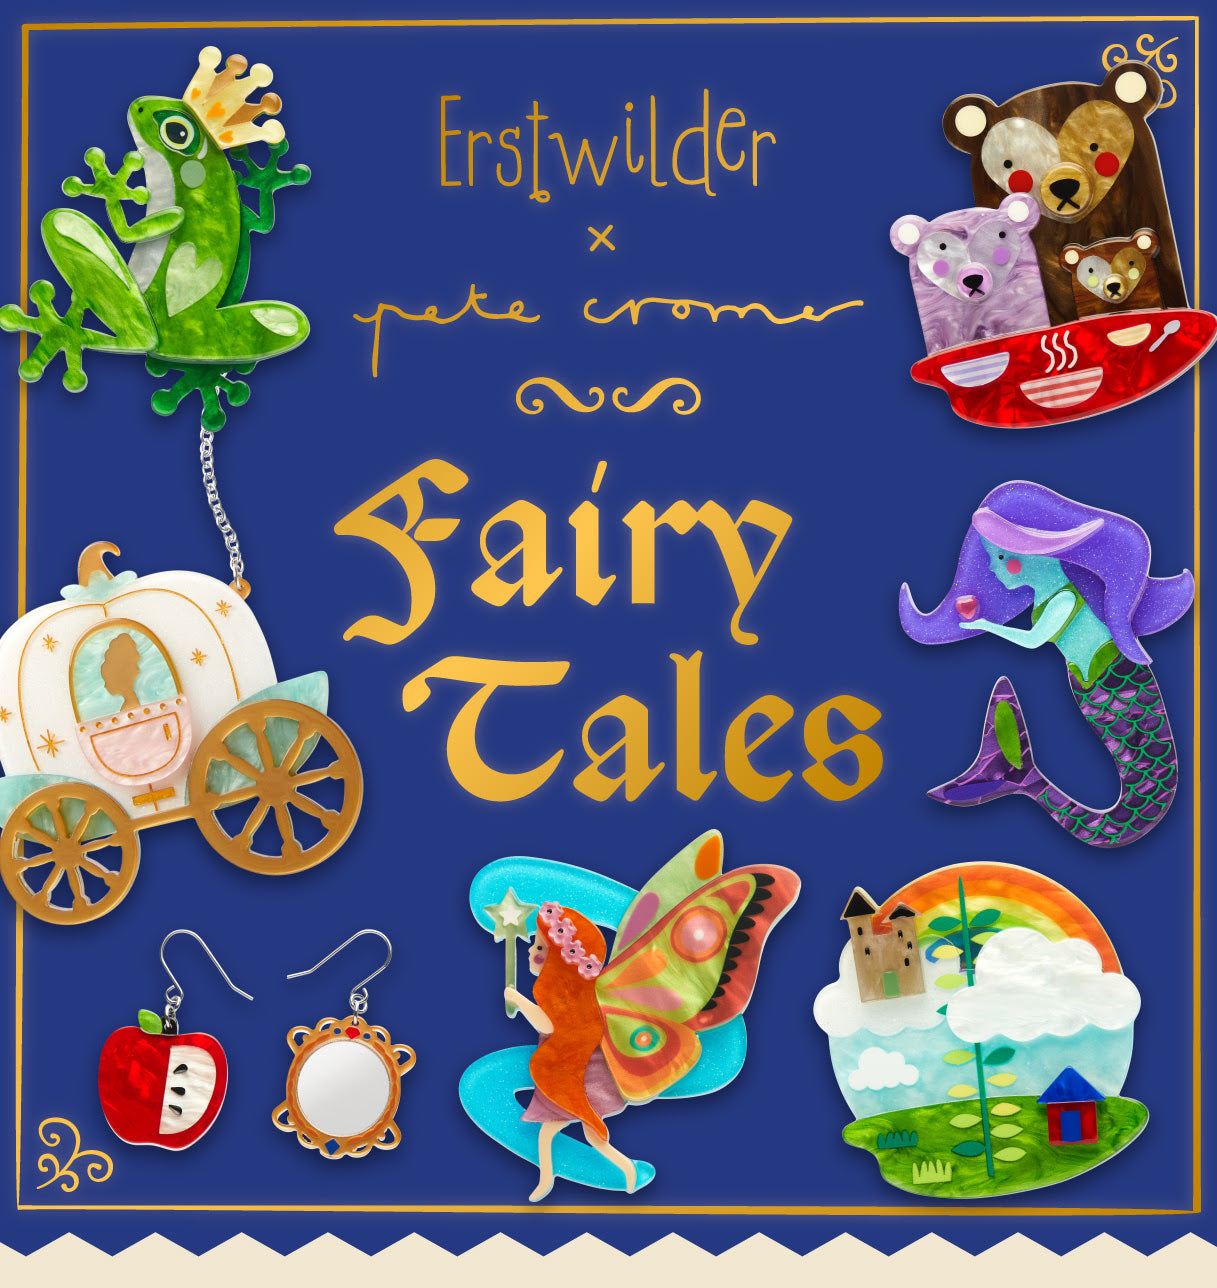 Fairy Tales by Erstwilder x Pete Cromer